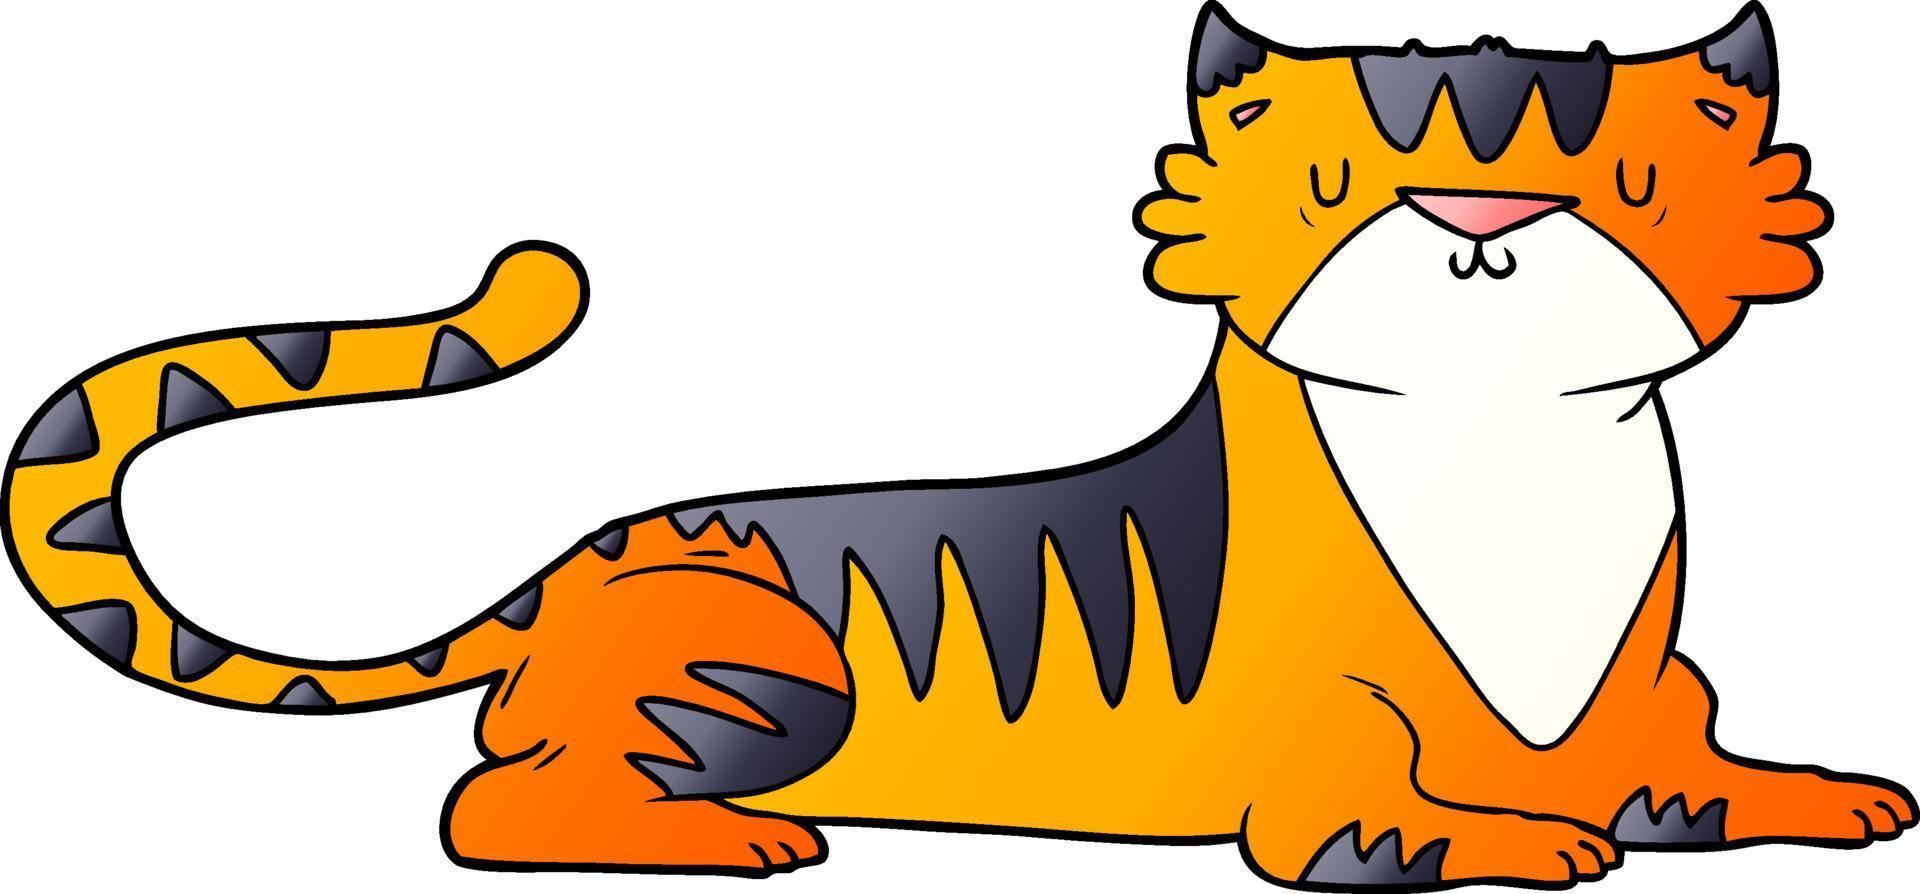 Cartoon-Doodle-Charakter Tiger vektor